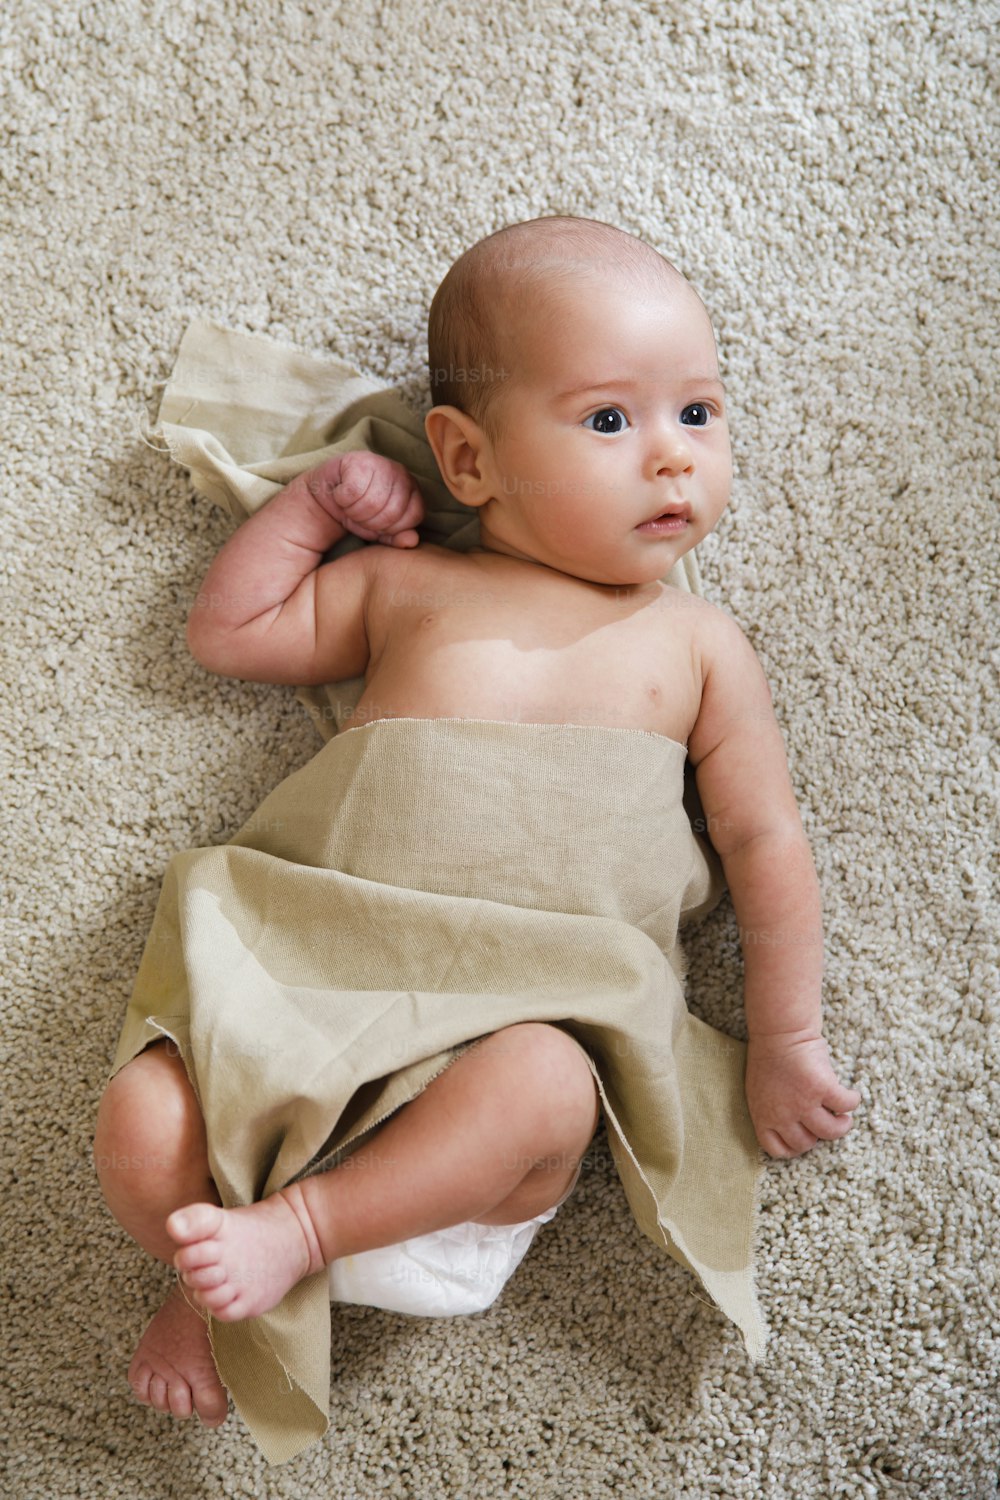 Süßes kleines Baby, das mit einem Stück Leinenstoff bedeckt ist, liegt auf dem weichen Teppich